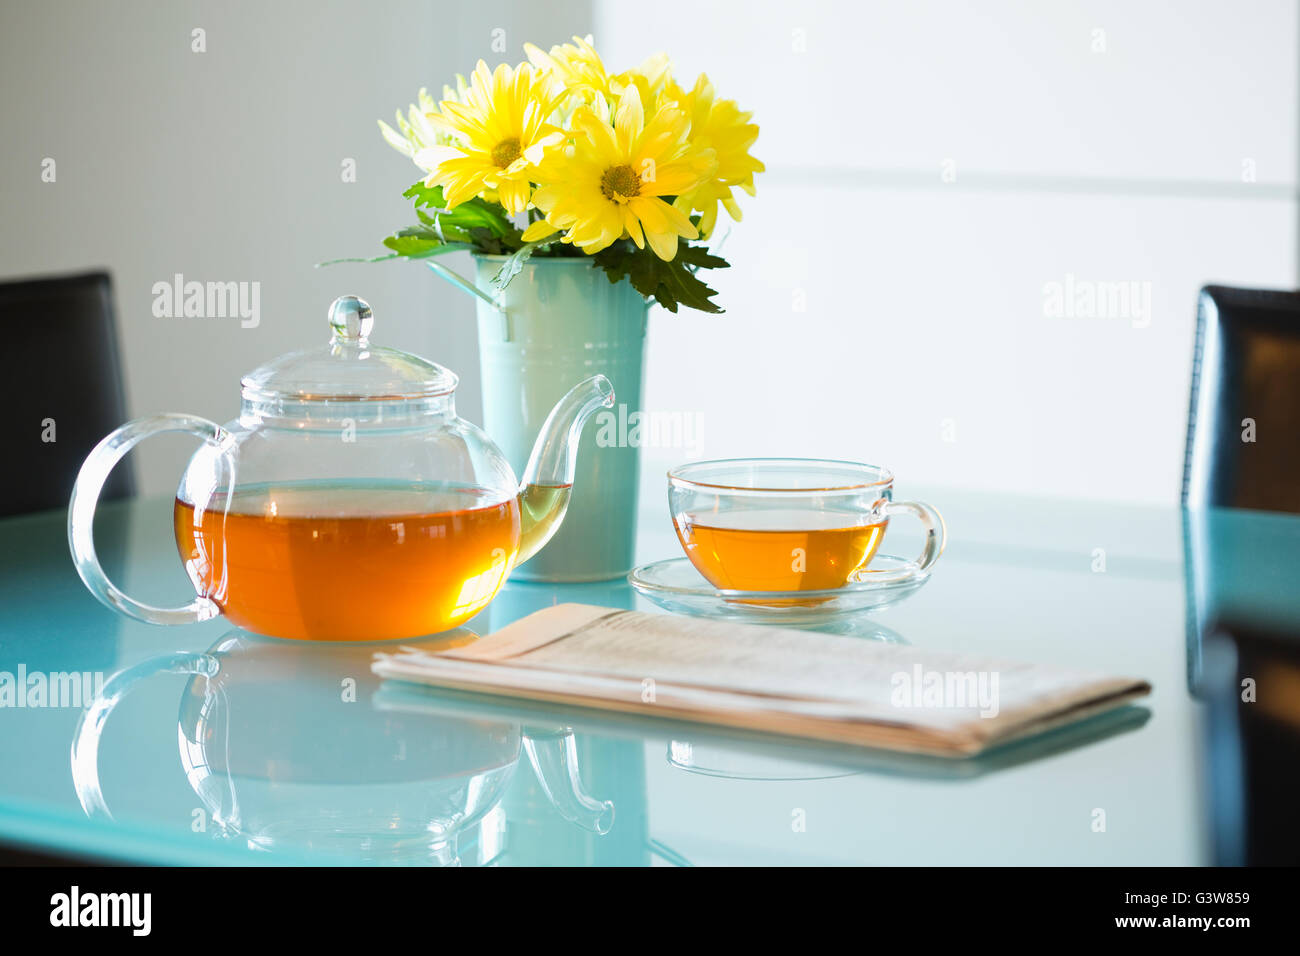 Tè con teiera e bouquet di margherite giallo sul tavolo Foto Stock